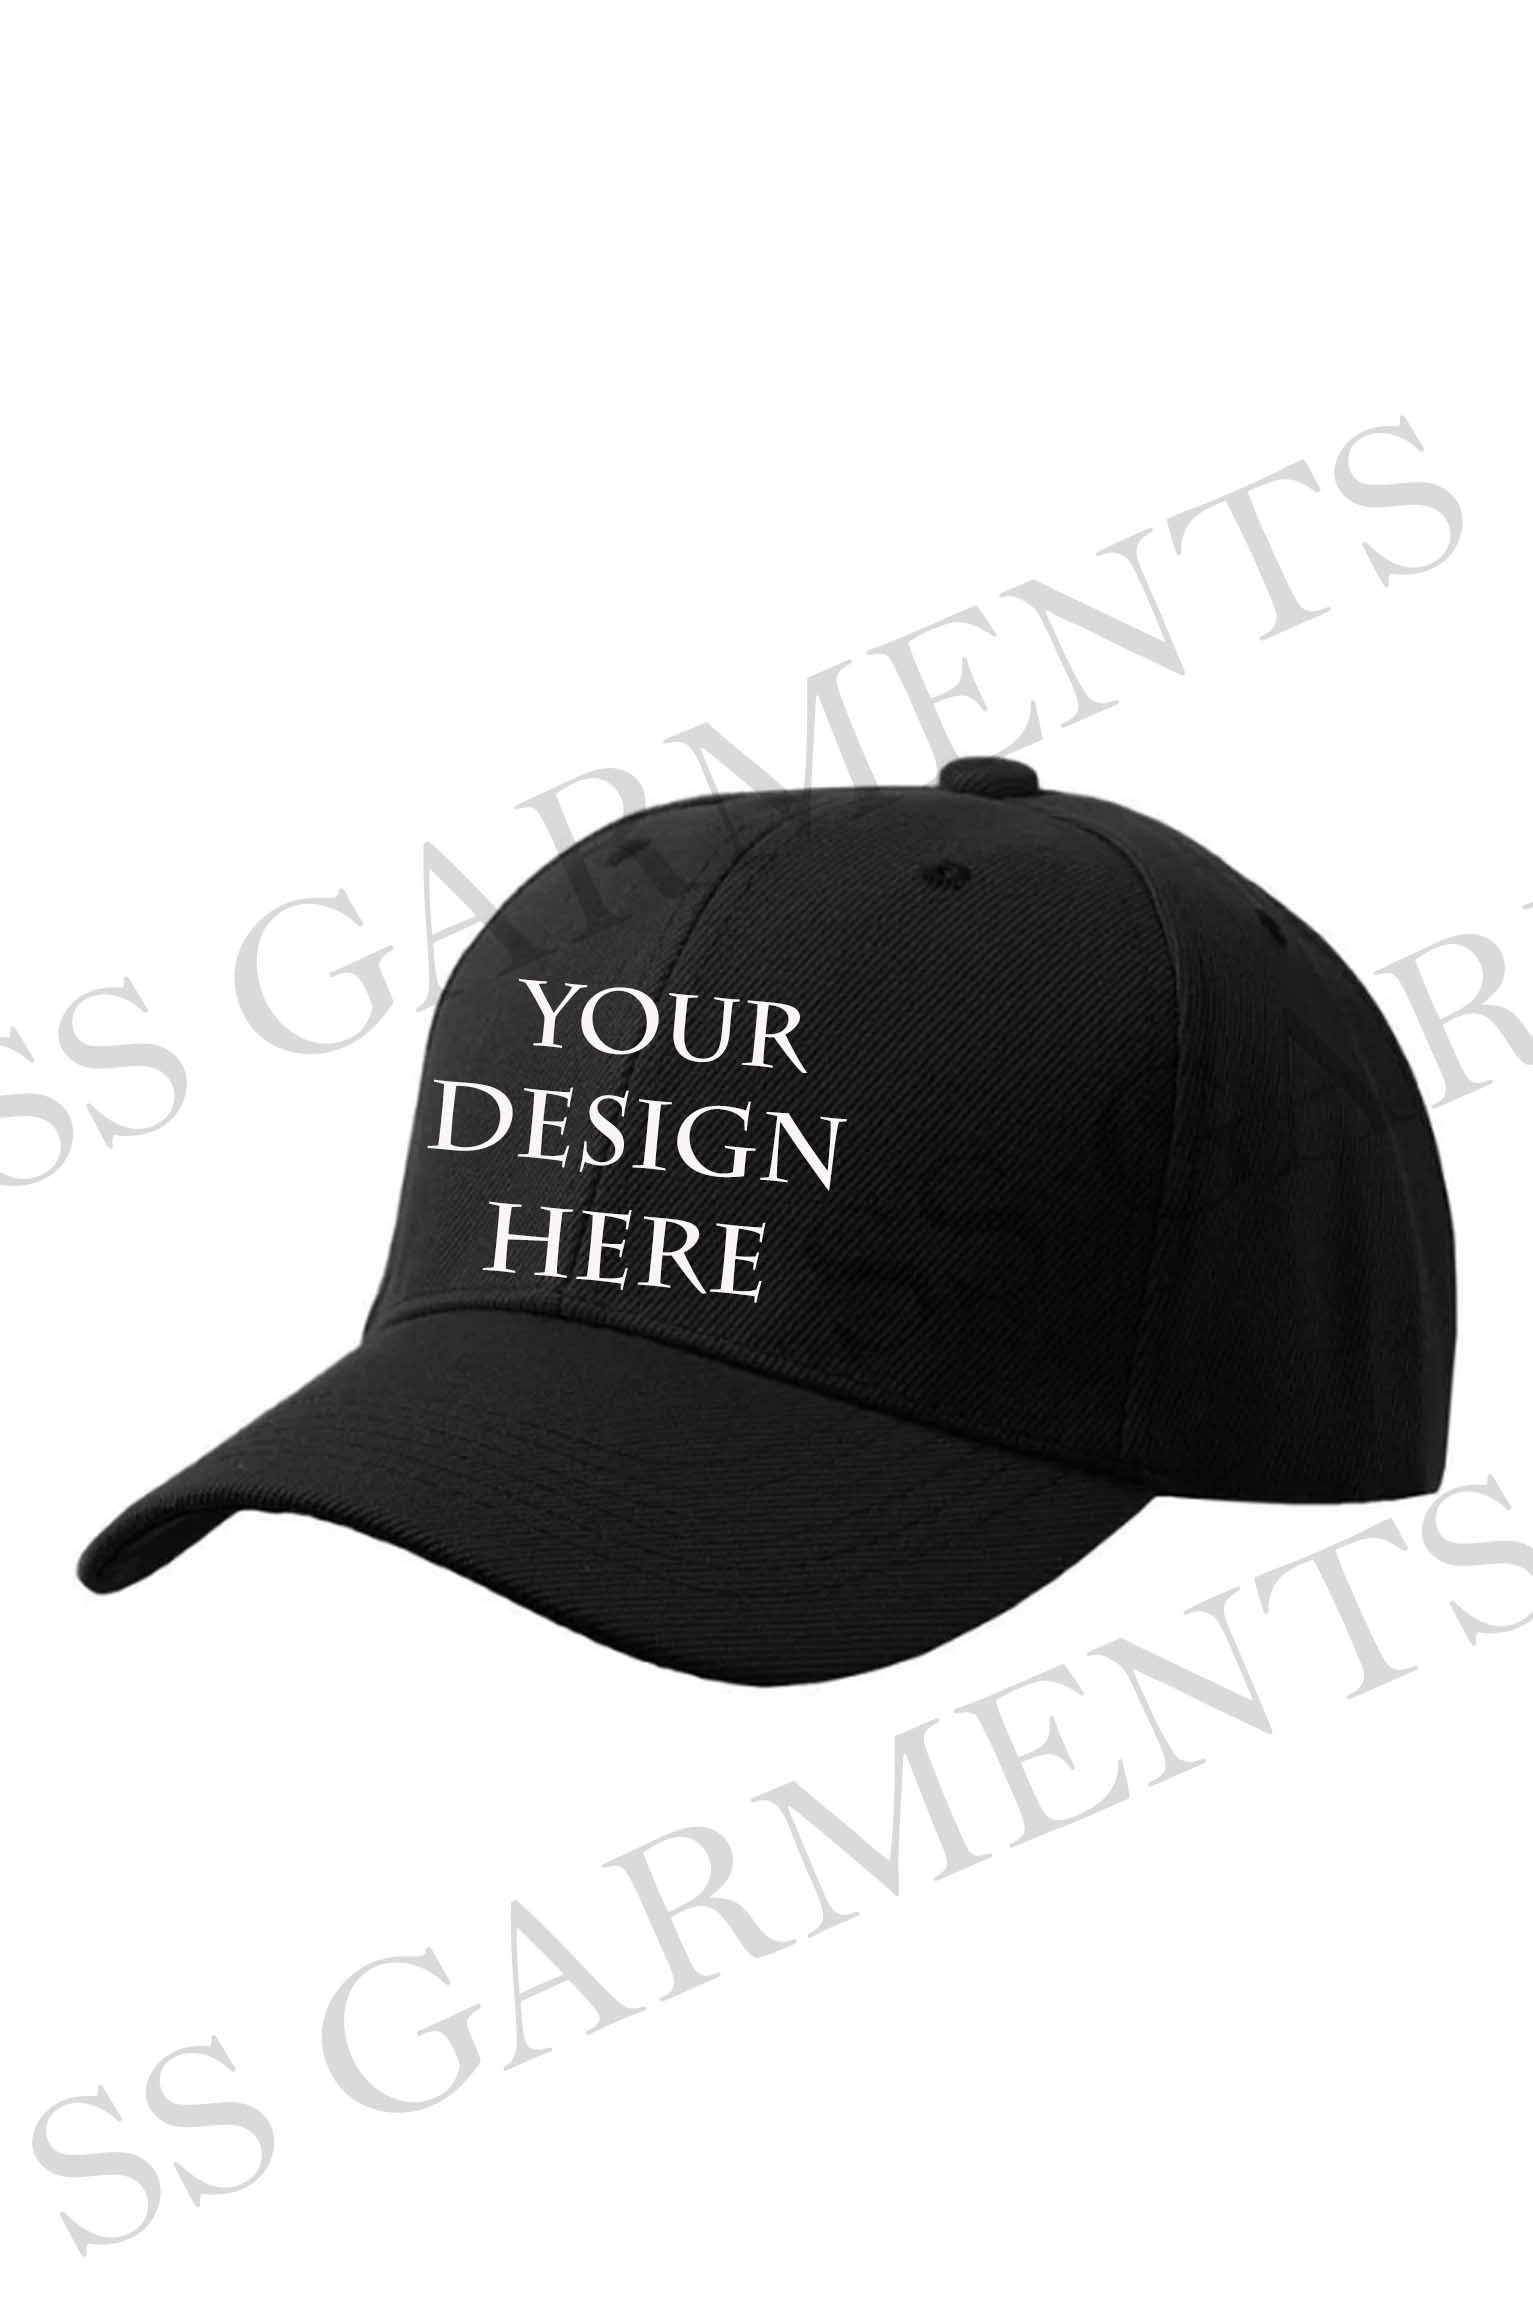 Premium Quality Make Your Own Design Cap